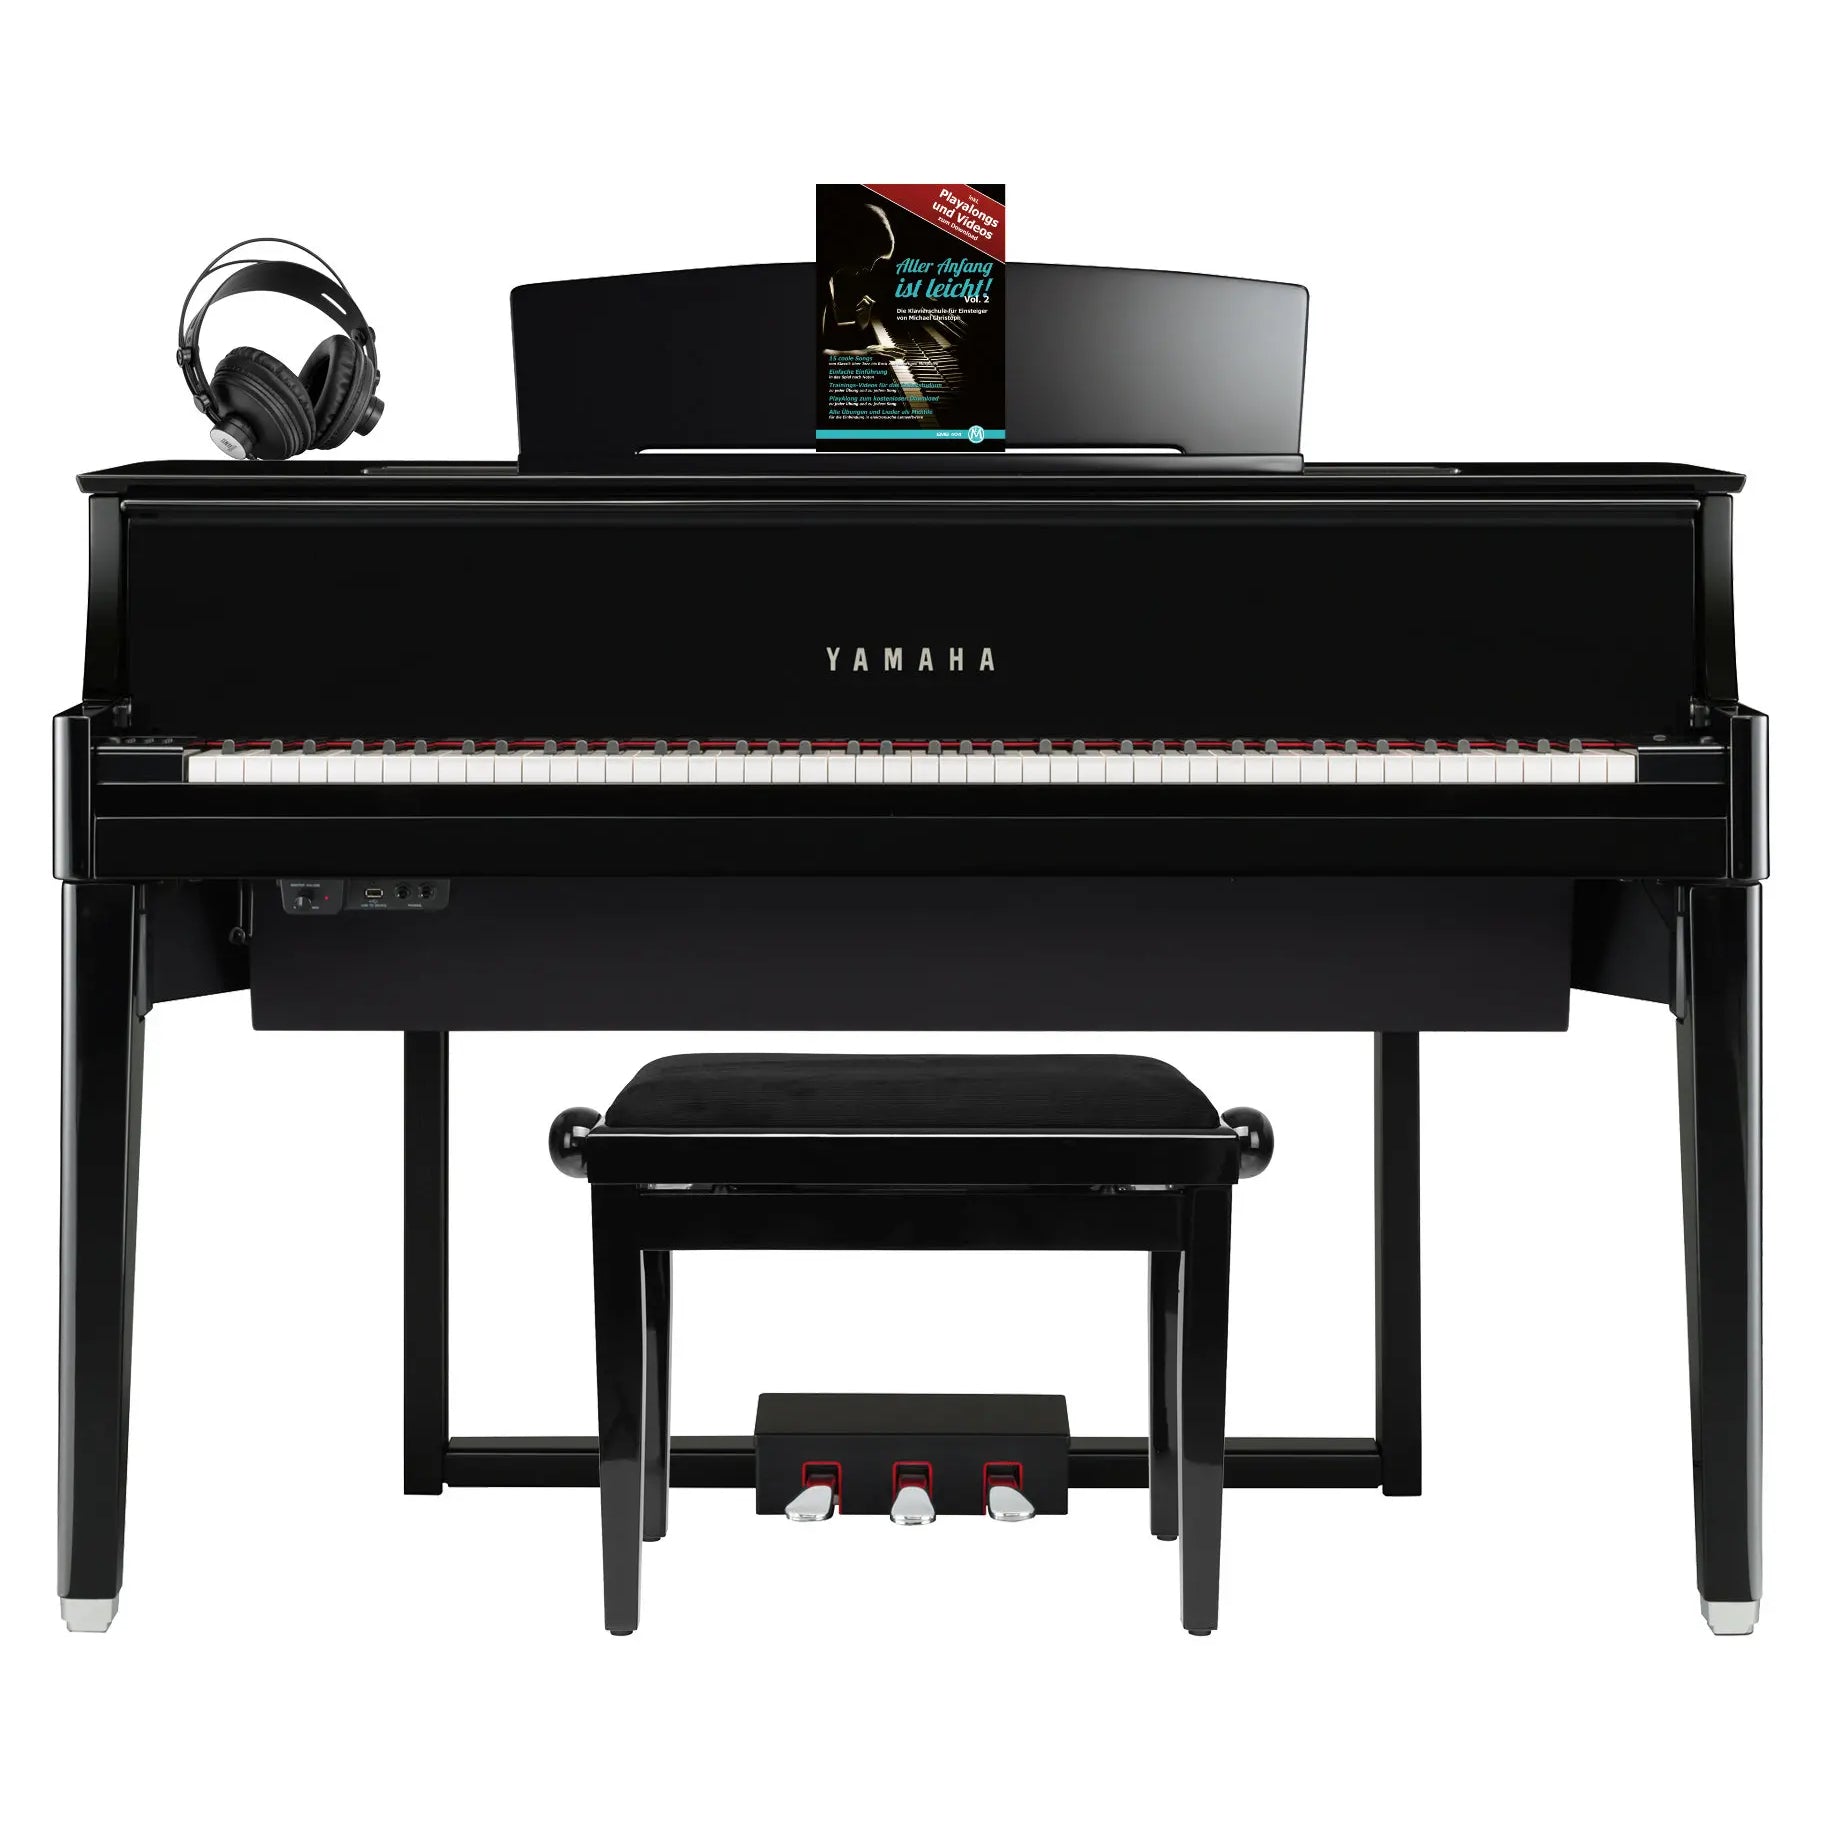 Đàn Piano Điện Yamaha N1X AvantGrand - Qua Sử Dụng